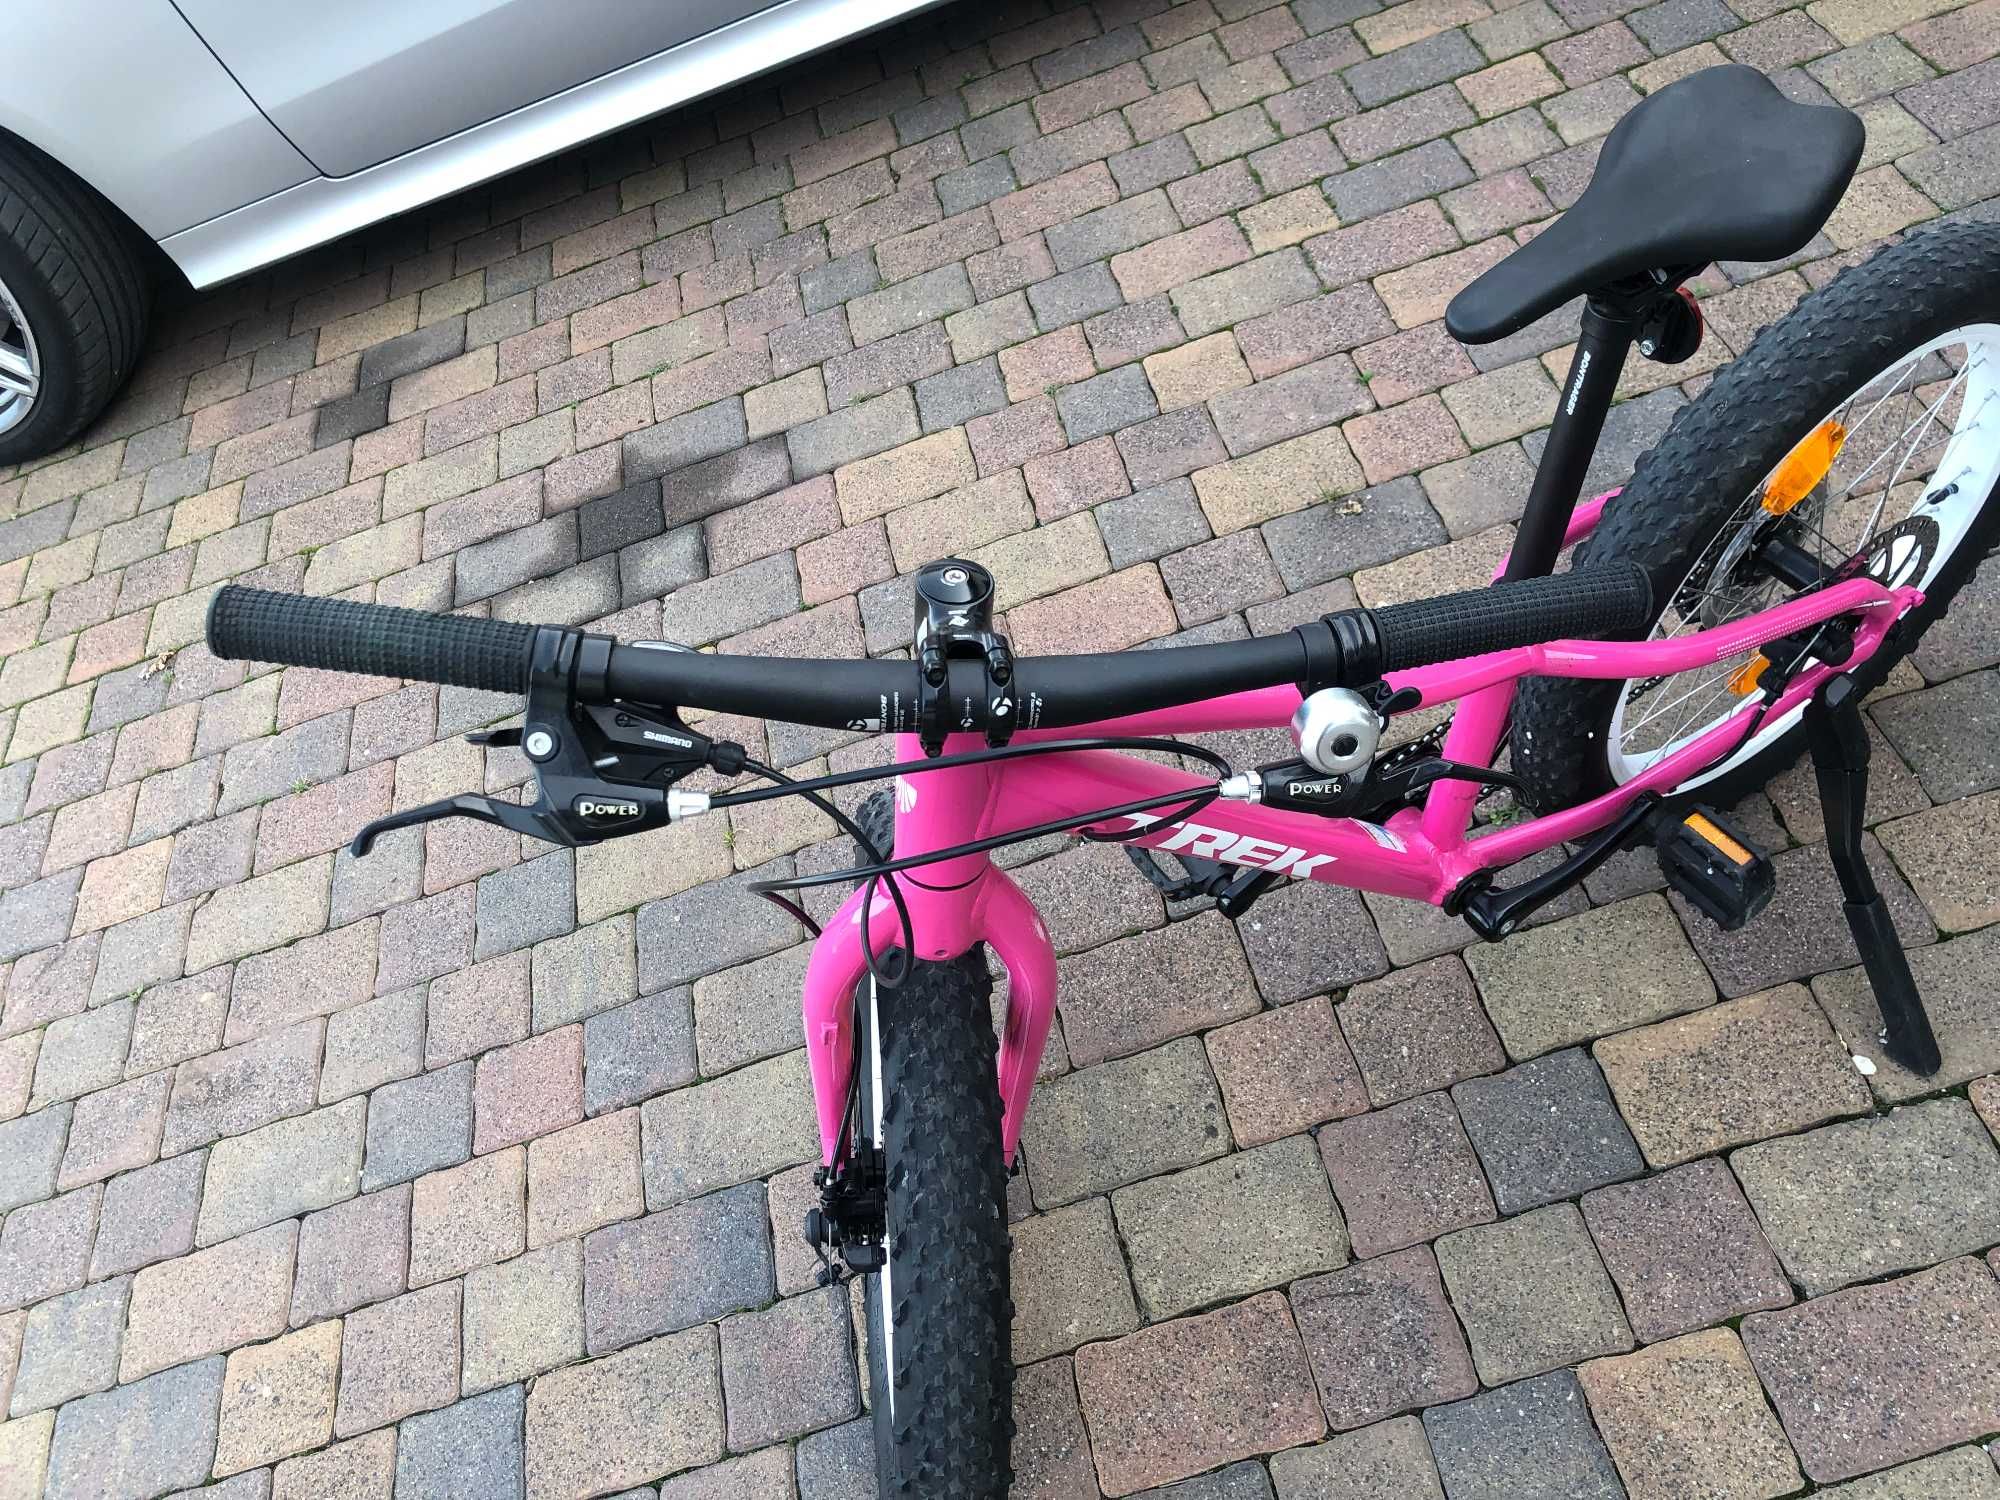 rower TREK  ROSCOE 20 dla dziewczynki 5-8 lat Różowy,stan Idealny